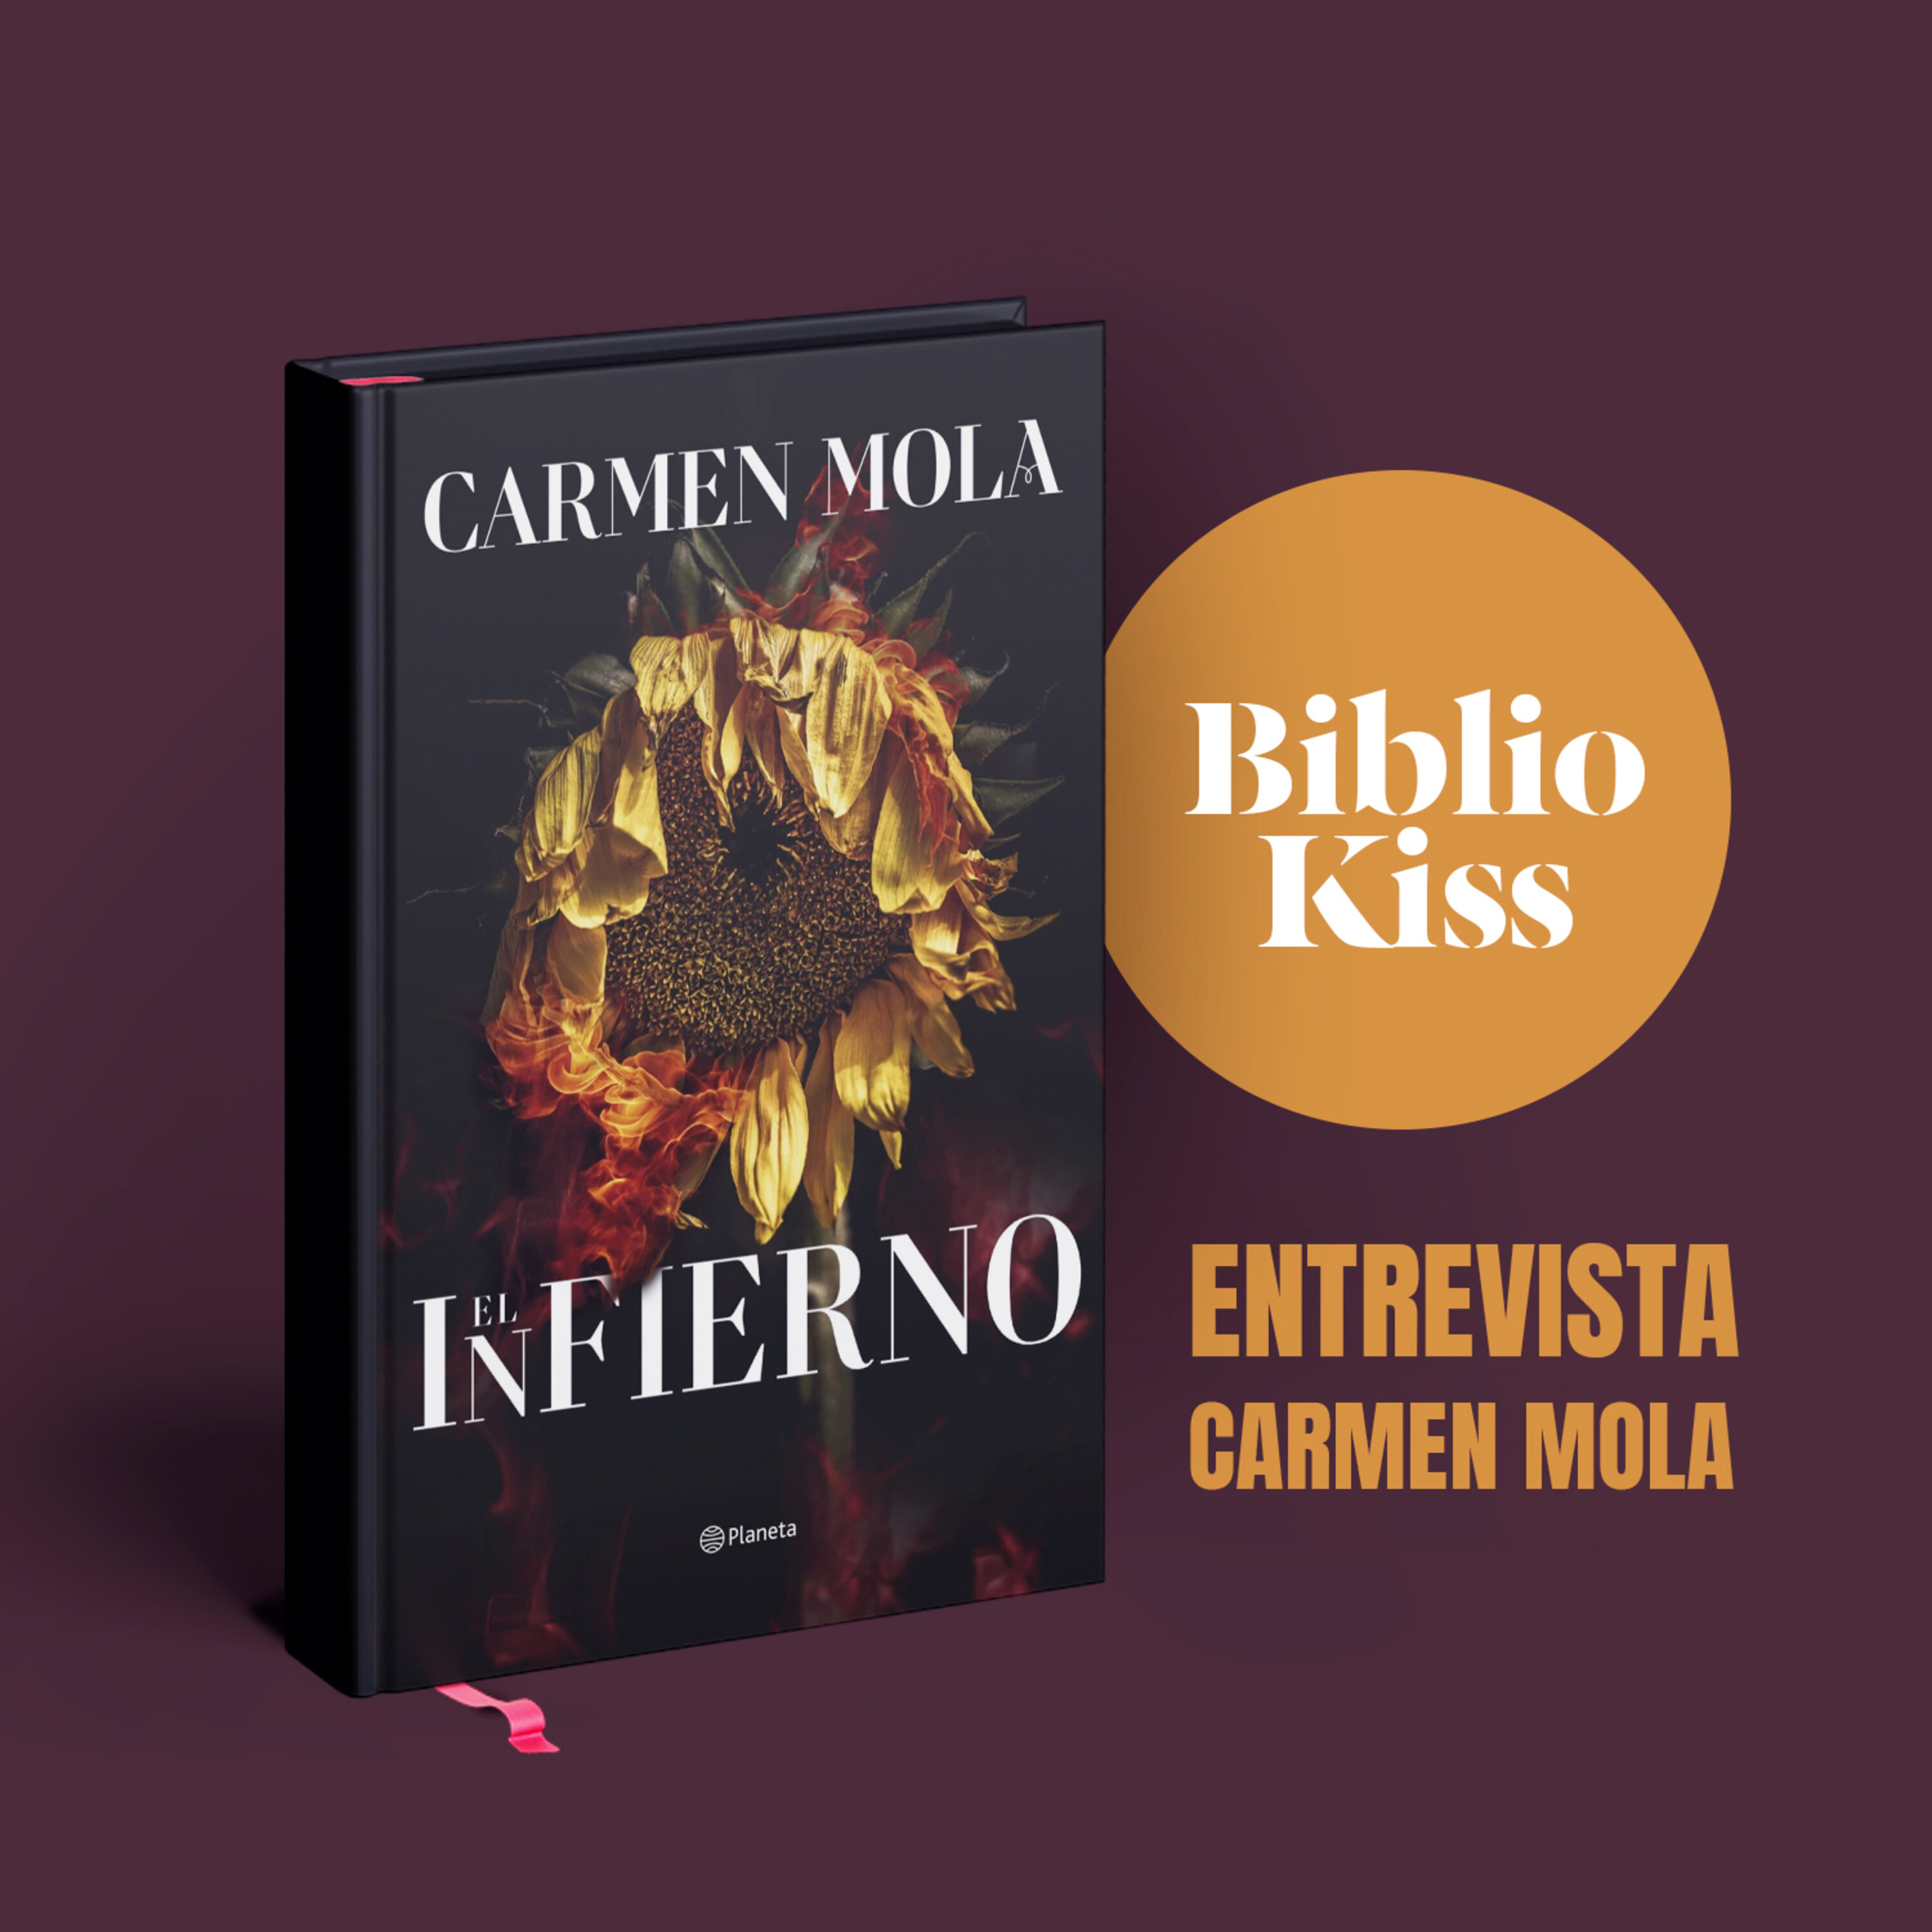 Carmen Mola nos presenta "El Infierno"